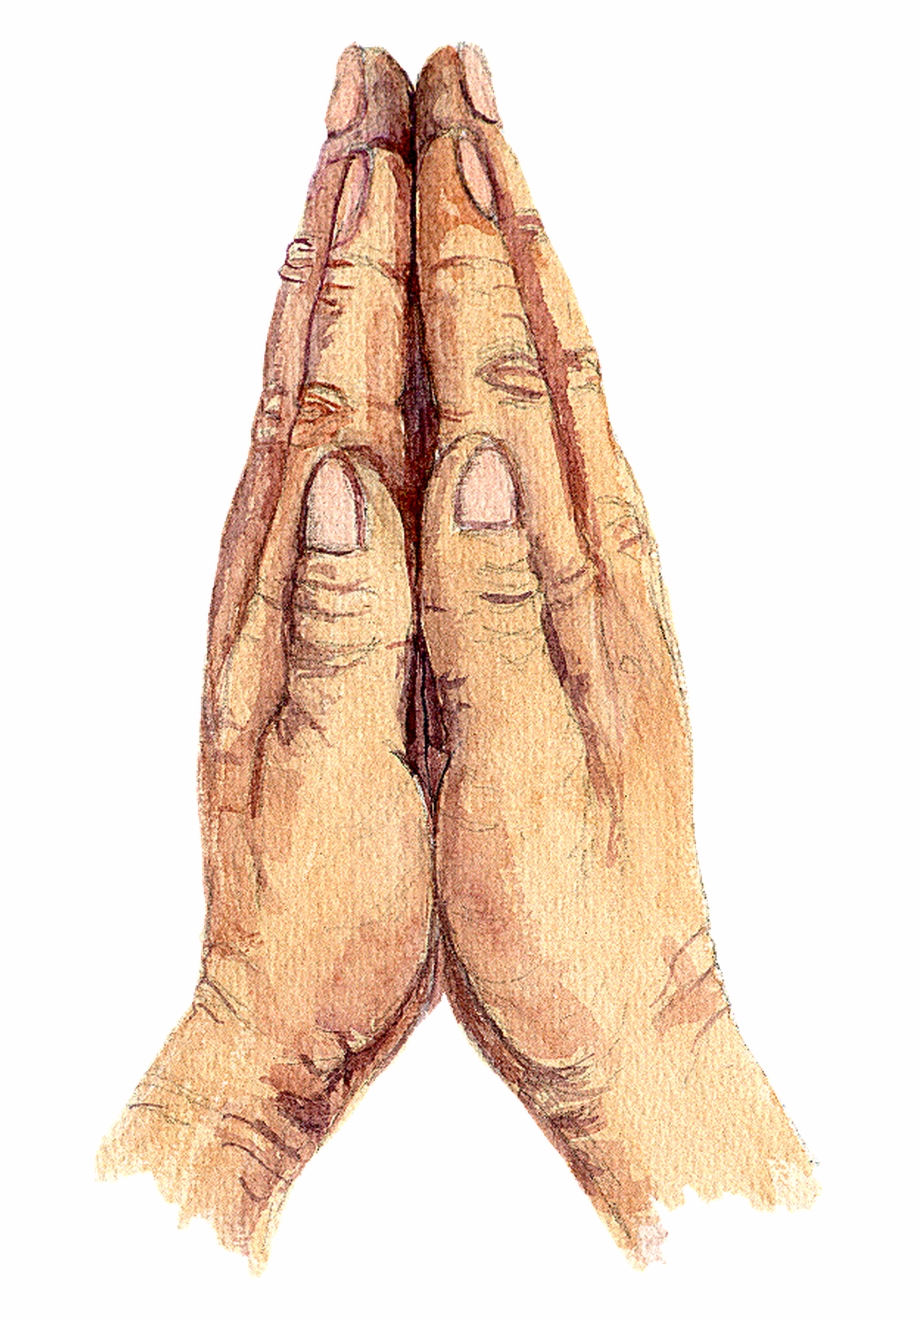 Praying Emoji Png Praying Hands